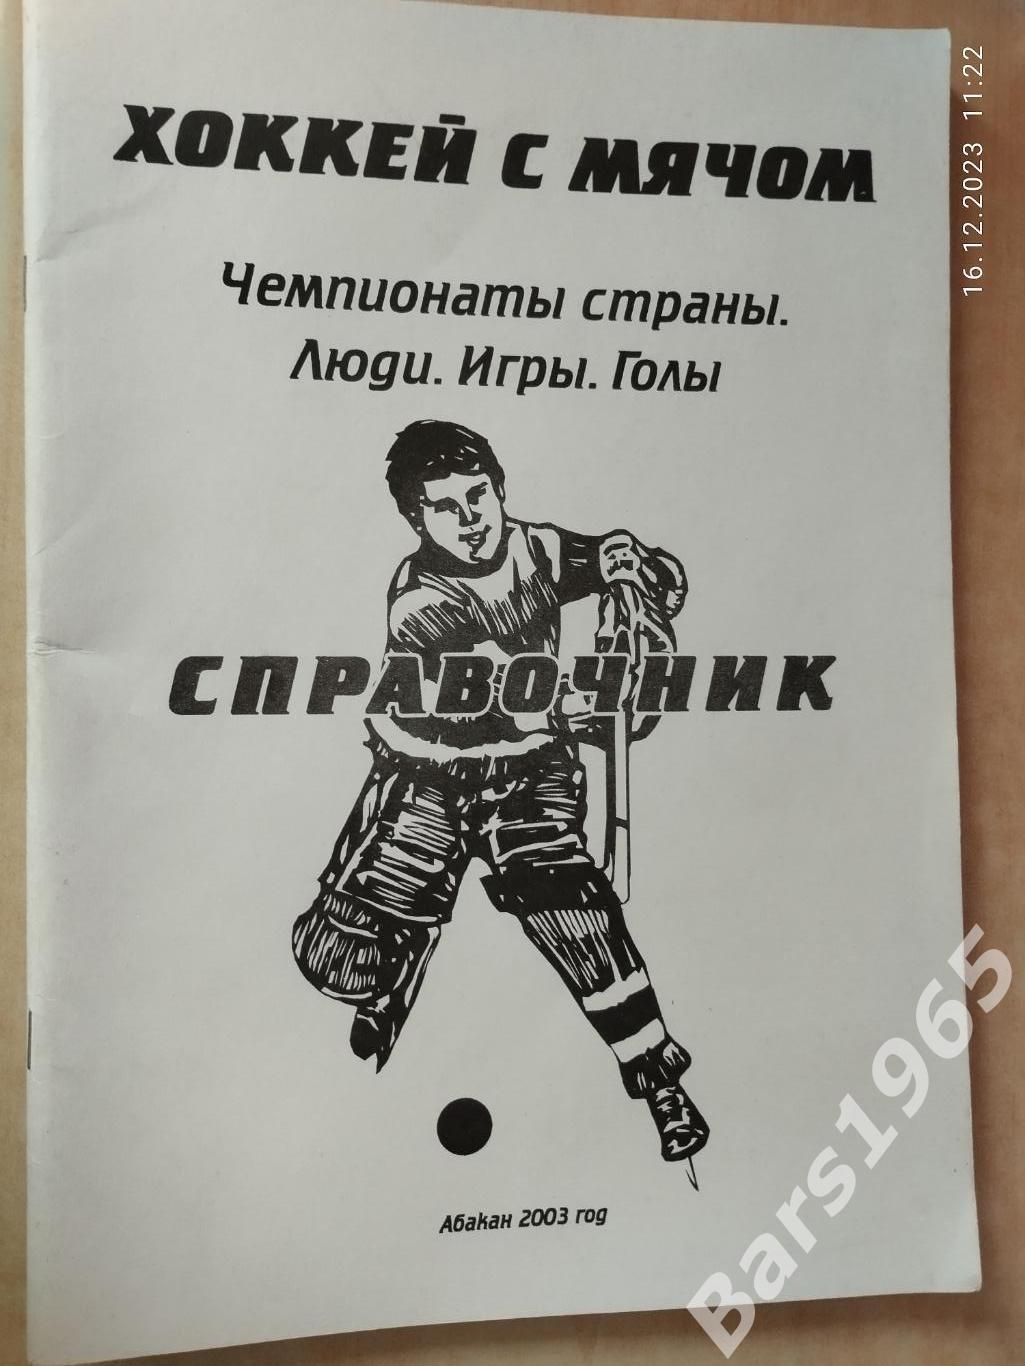 Абакан 2003 Хоккей с мячом Статистический справочник